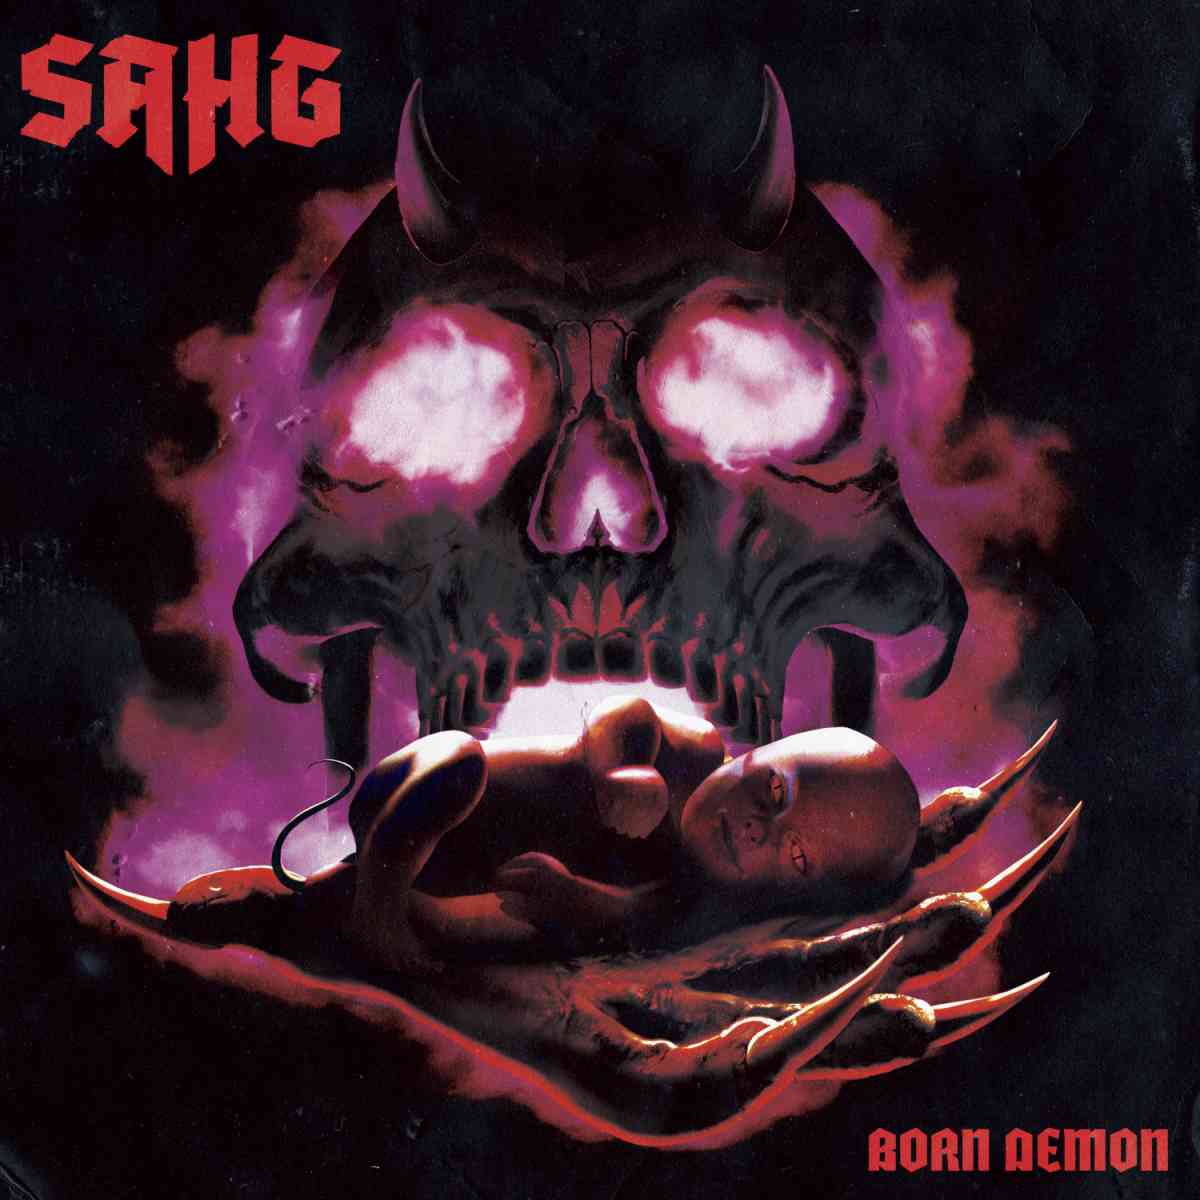 SAHG - born demon - album cover